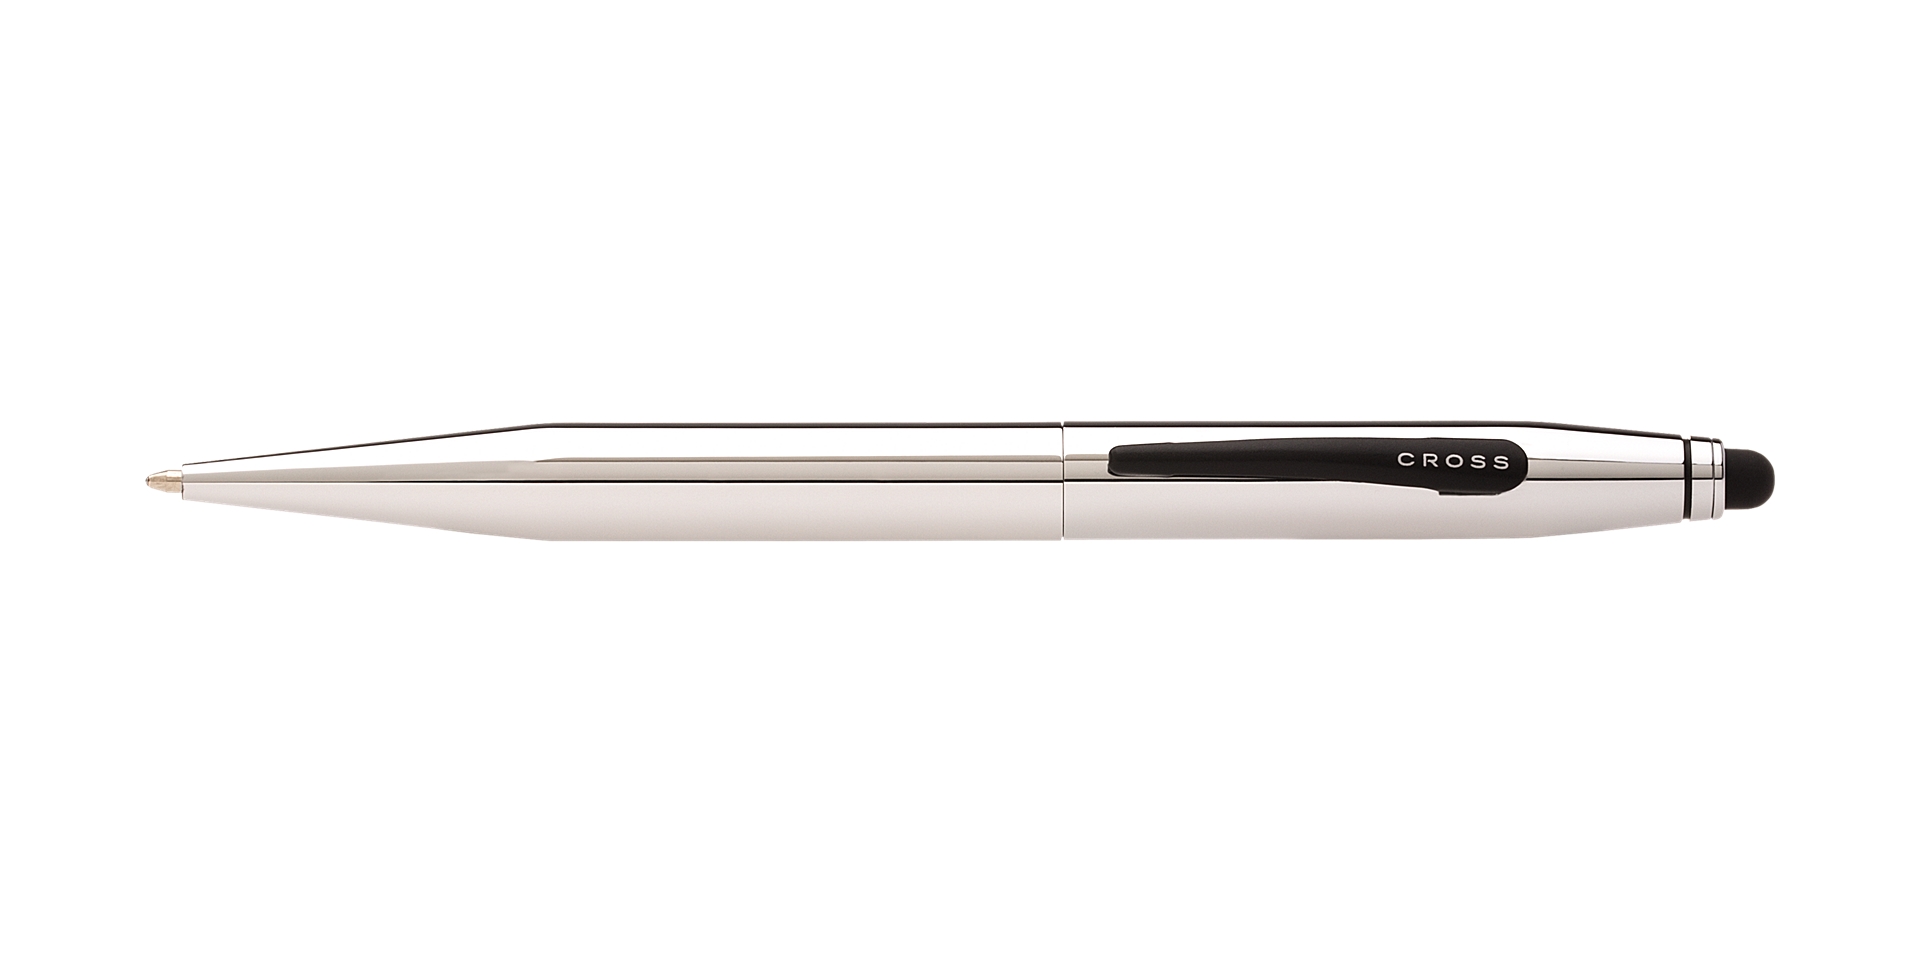  Tech 2 Chrome Ballpoint pen